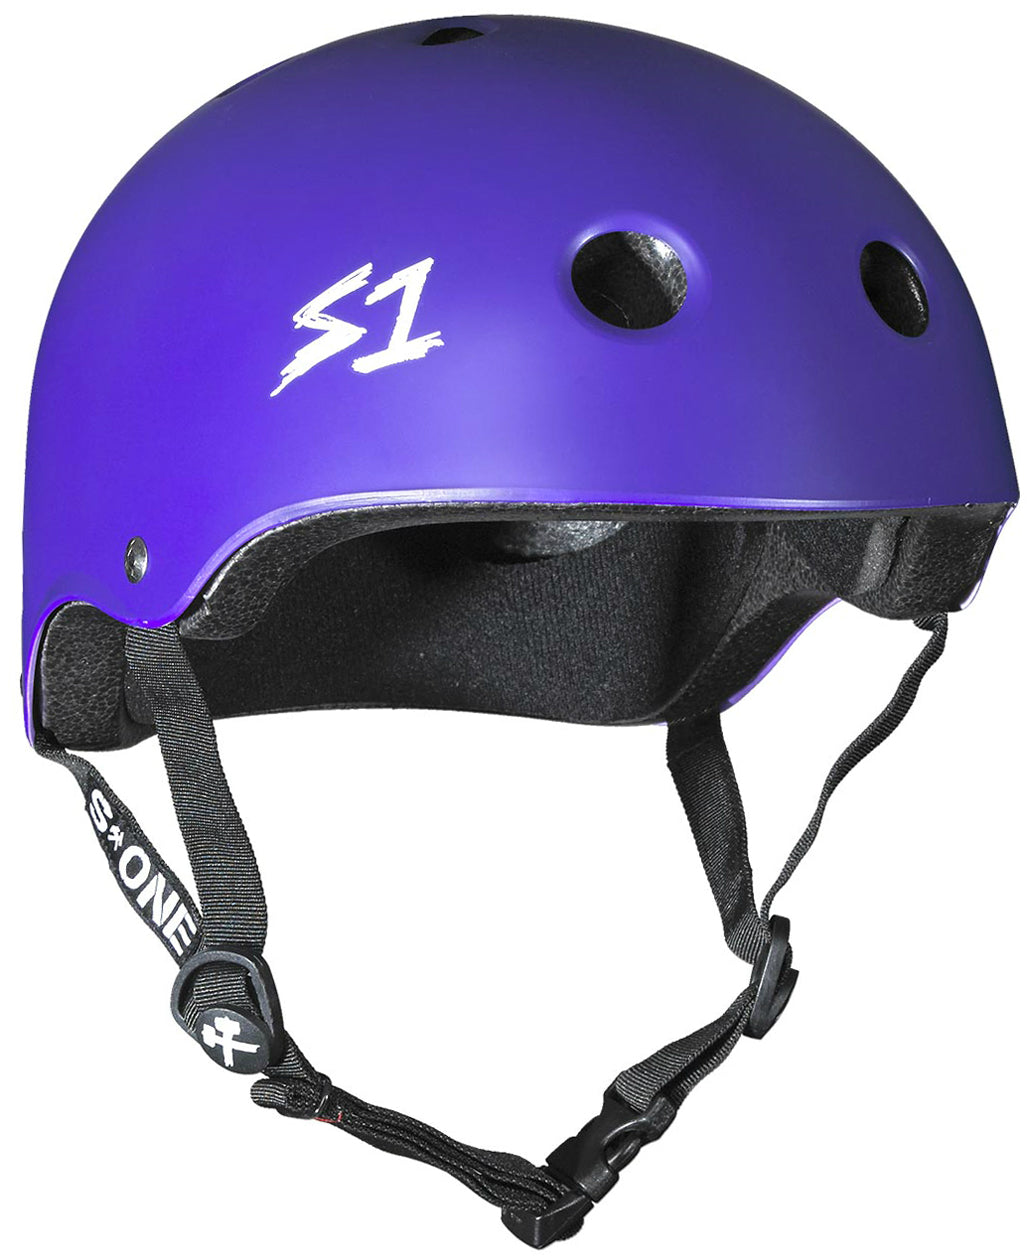 S1 Lifer Helmet - Casque Mauve mât avec sangles noires